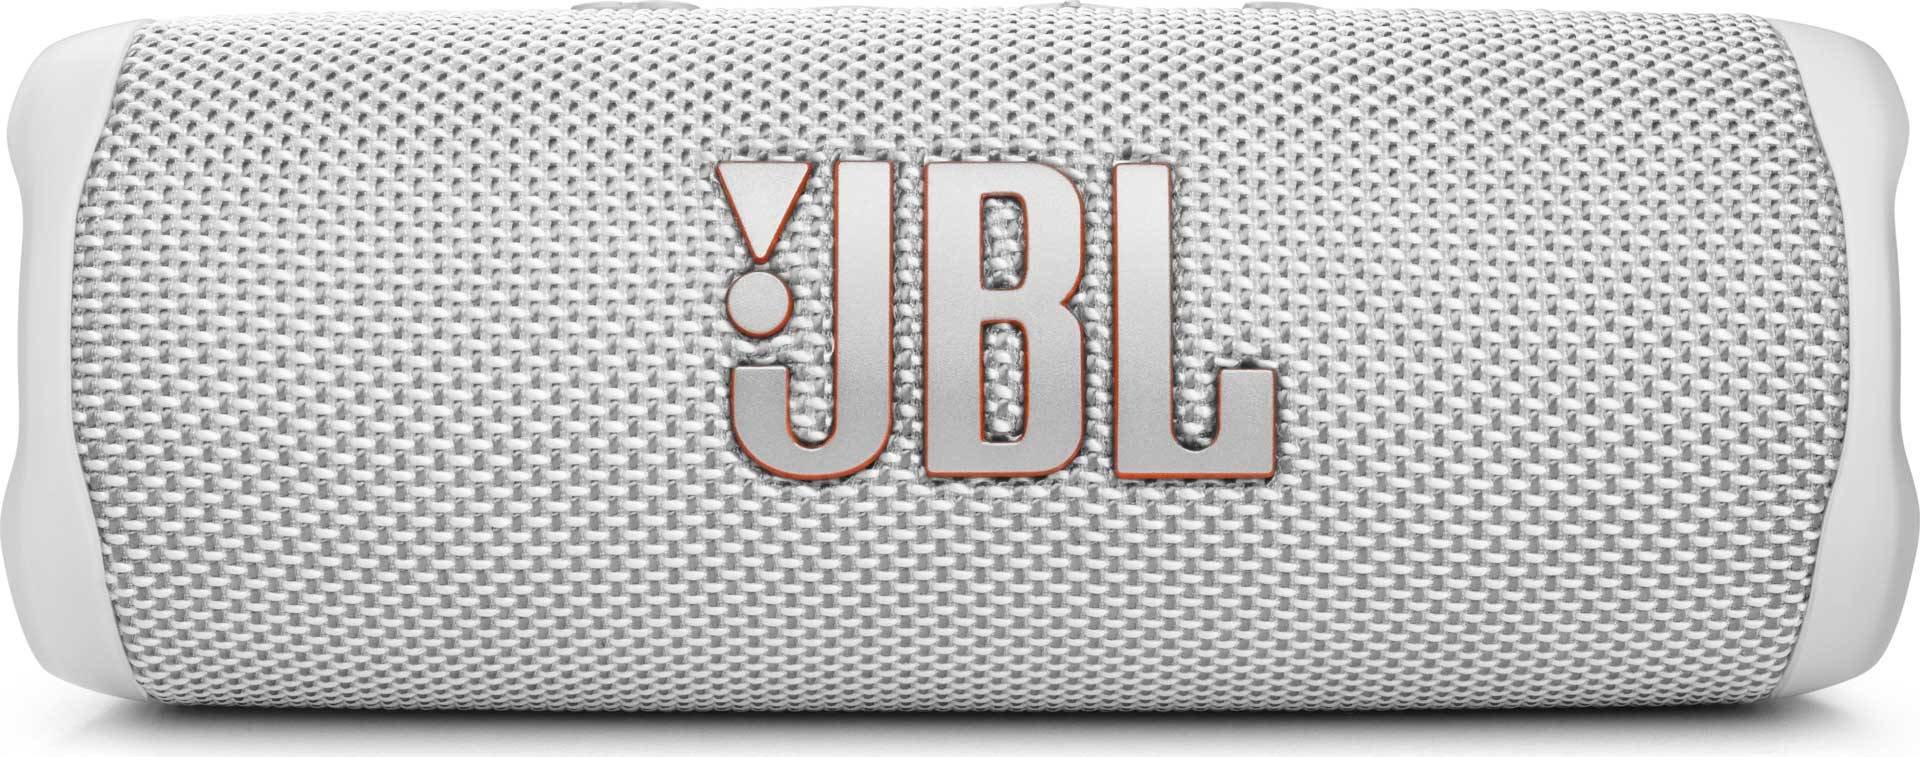 JBL  JBL FLIP 6 Tragbarer Stereo-Lautsprecher Weiß 20 W 